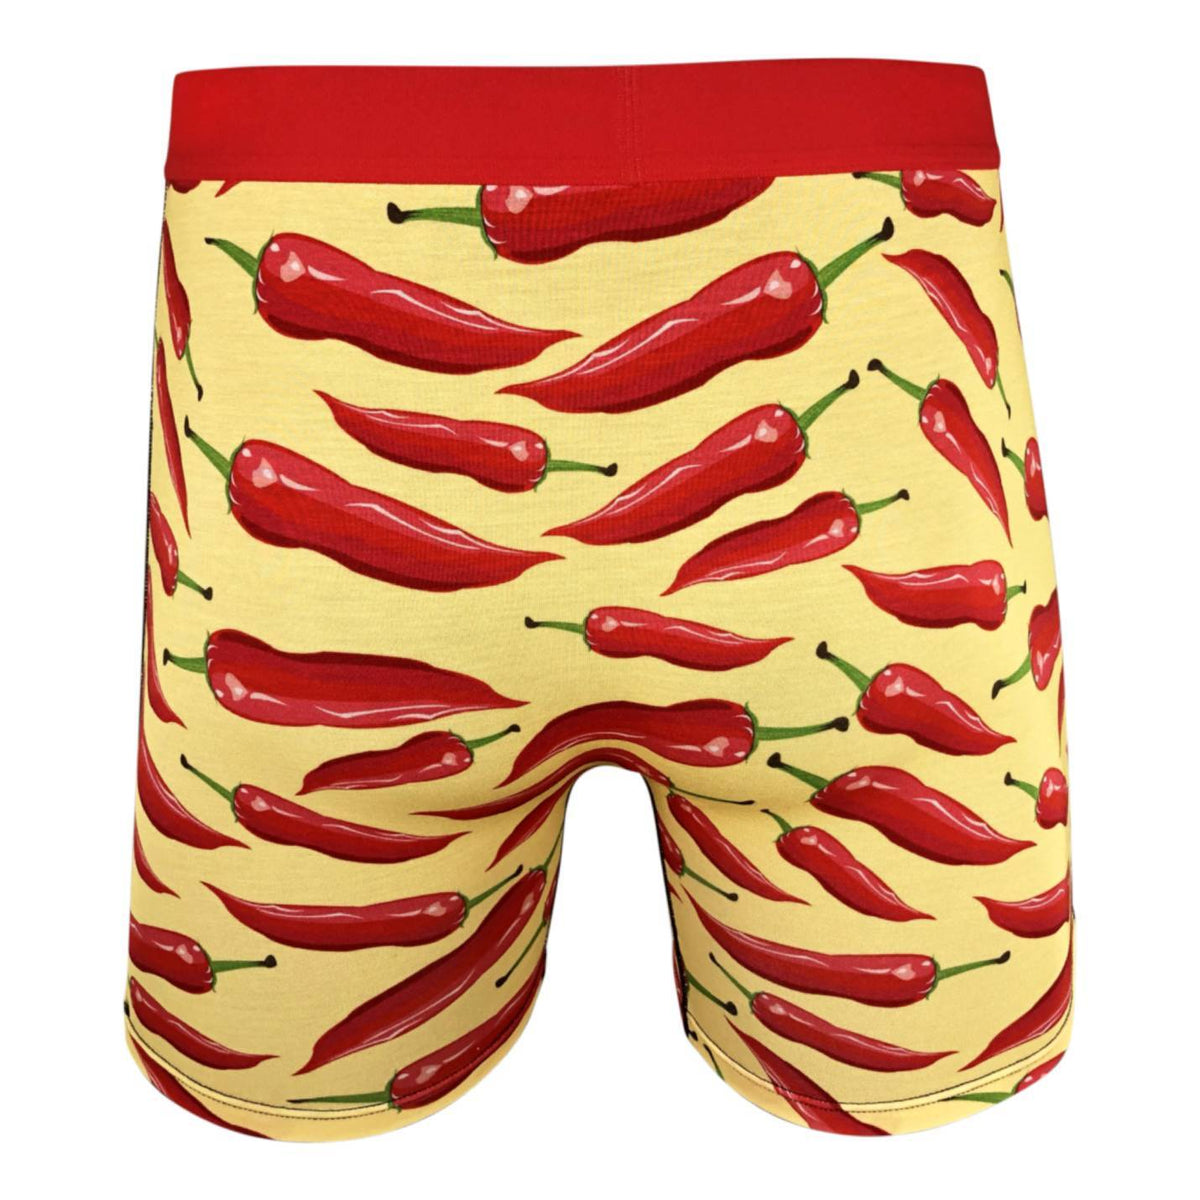 PHOTOS: Men's Underwear Goes Red for Summer